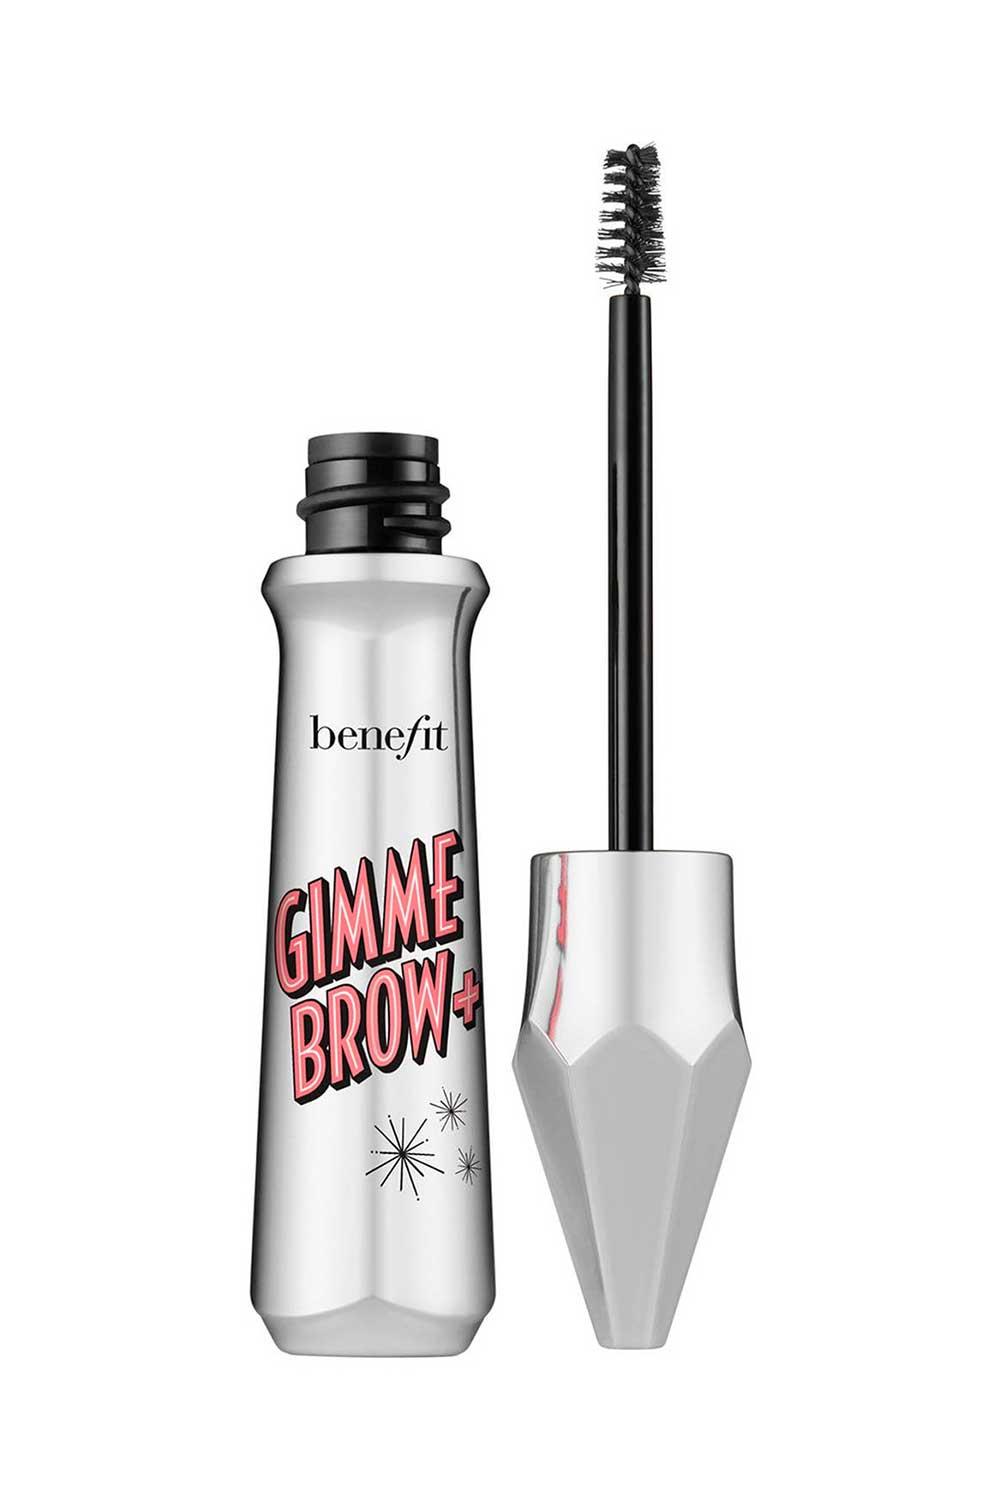 Benefir2. Gel voluminizador con color Gimme Brow+, Benefit Cosmetics